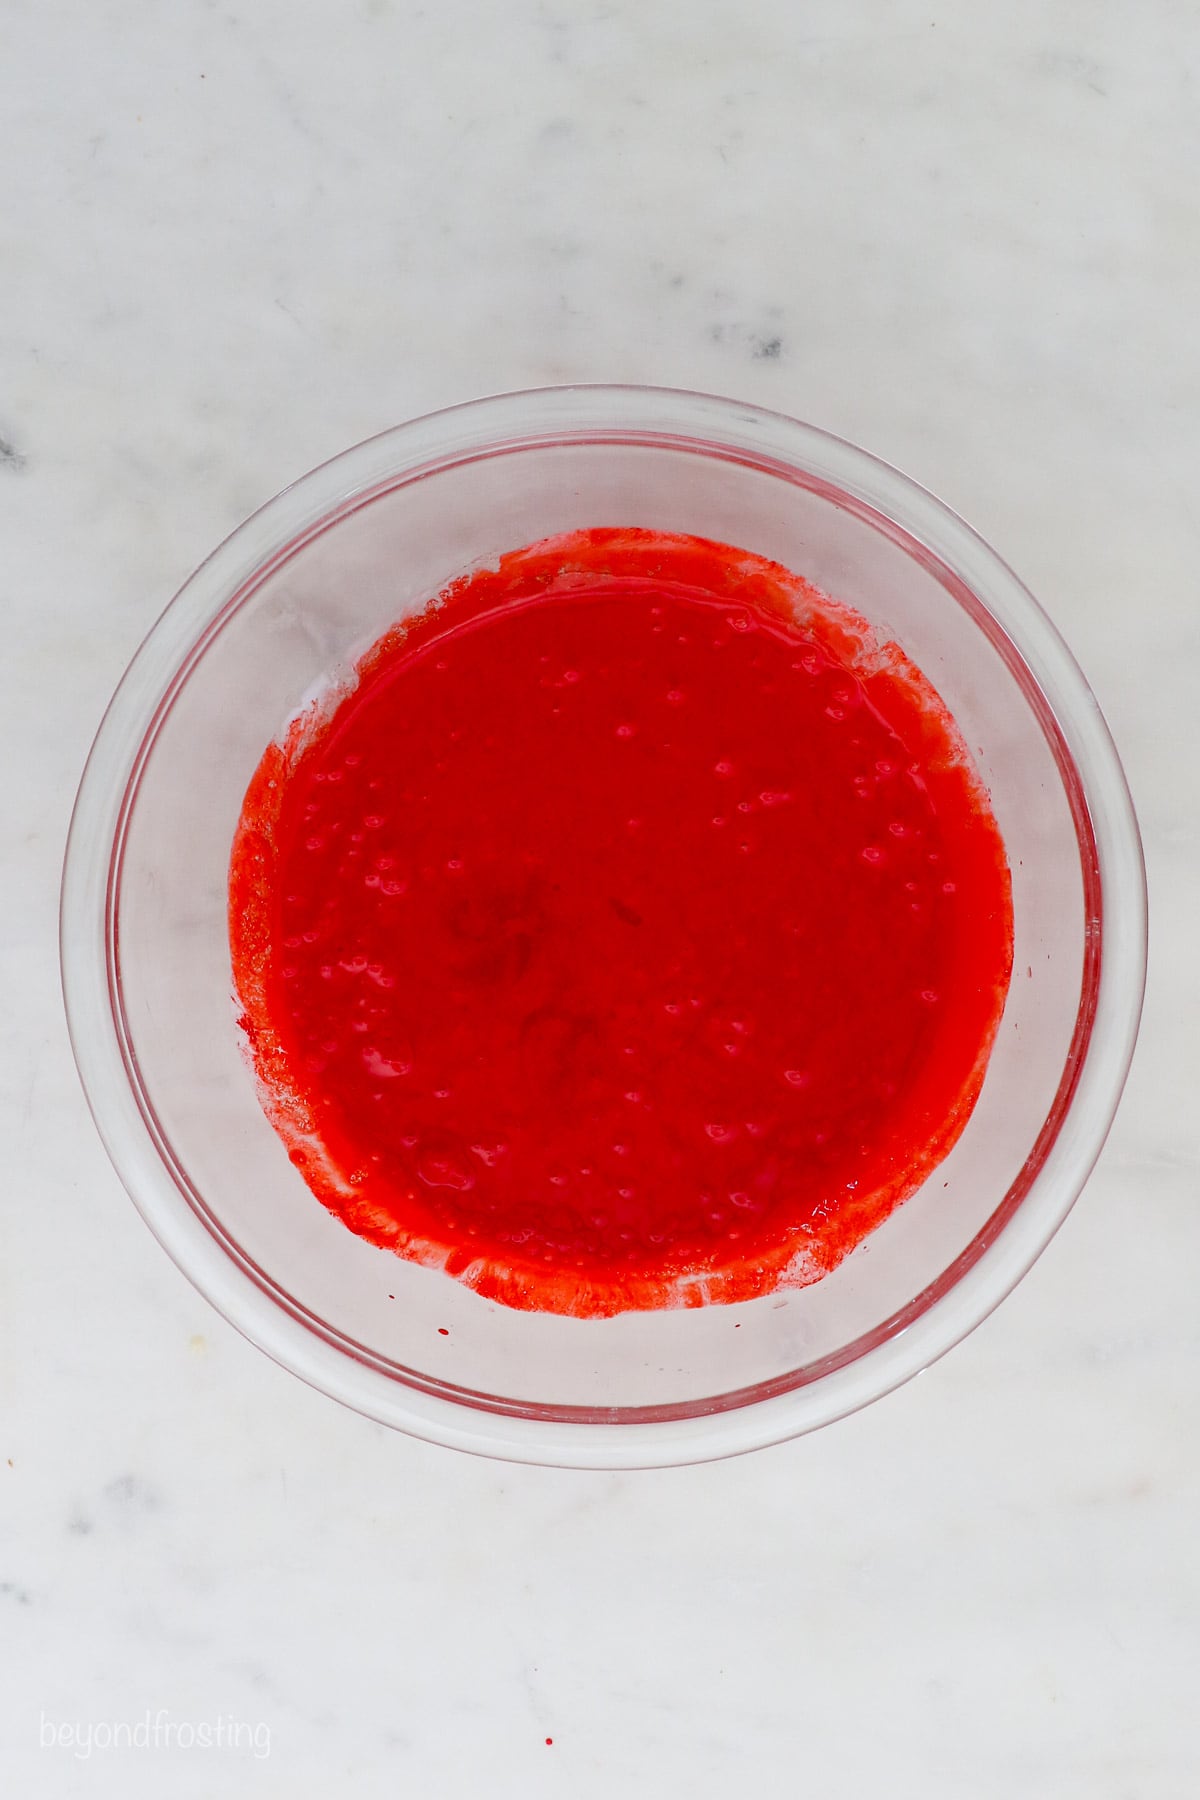 Red velvet cake batter in a glass bowl.